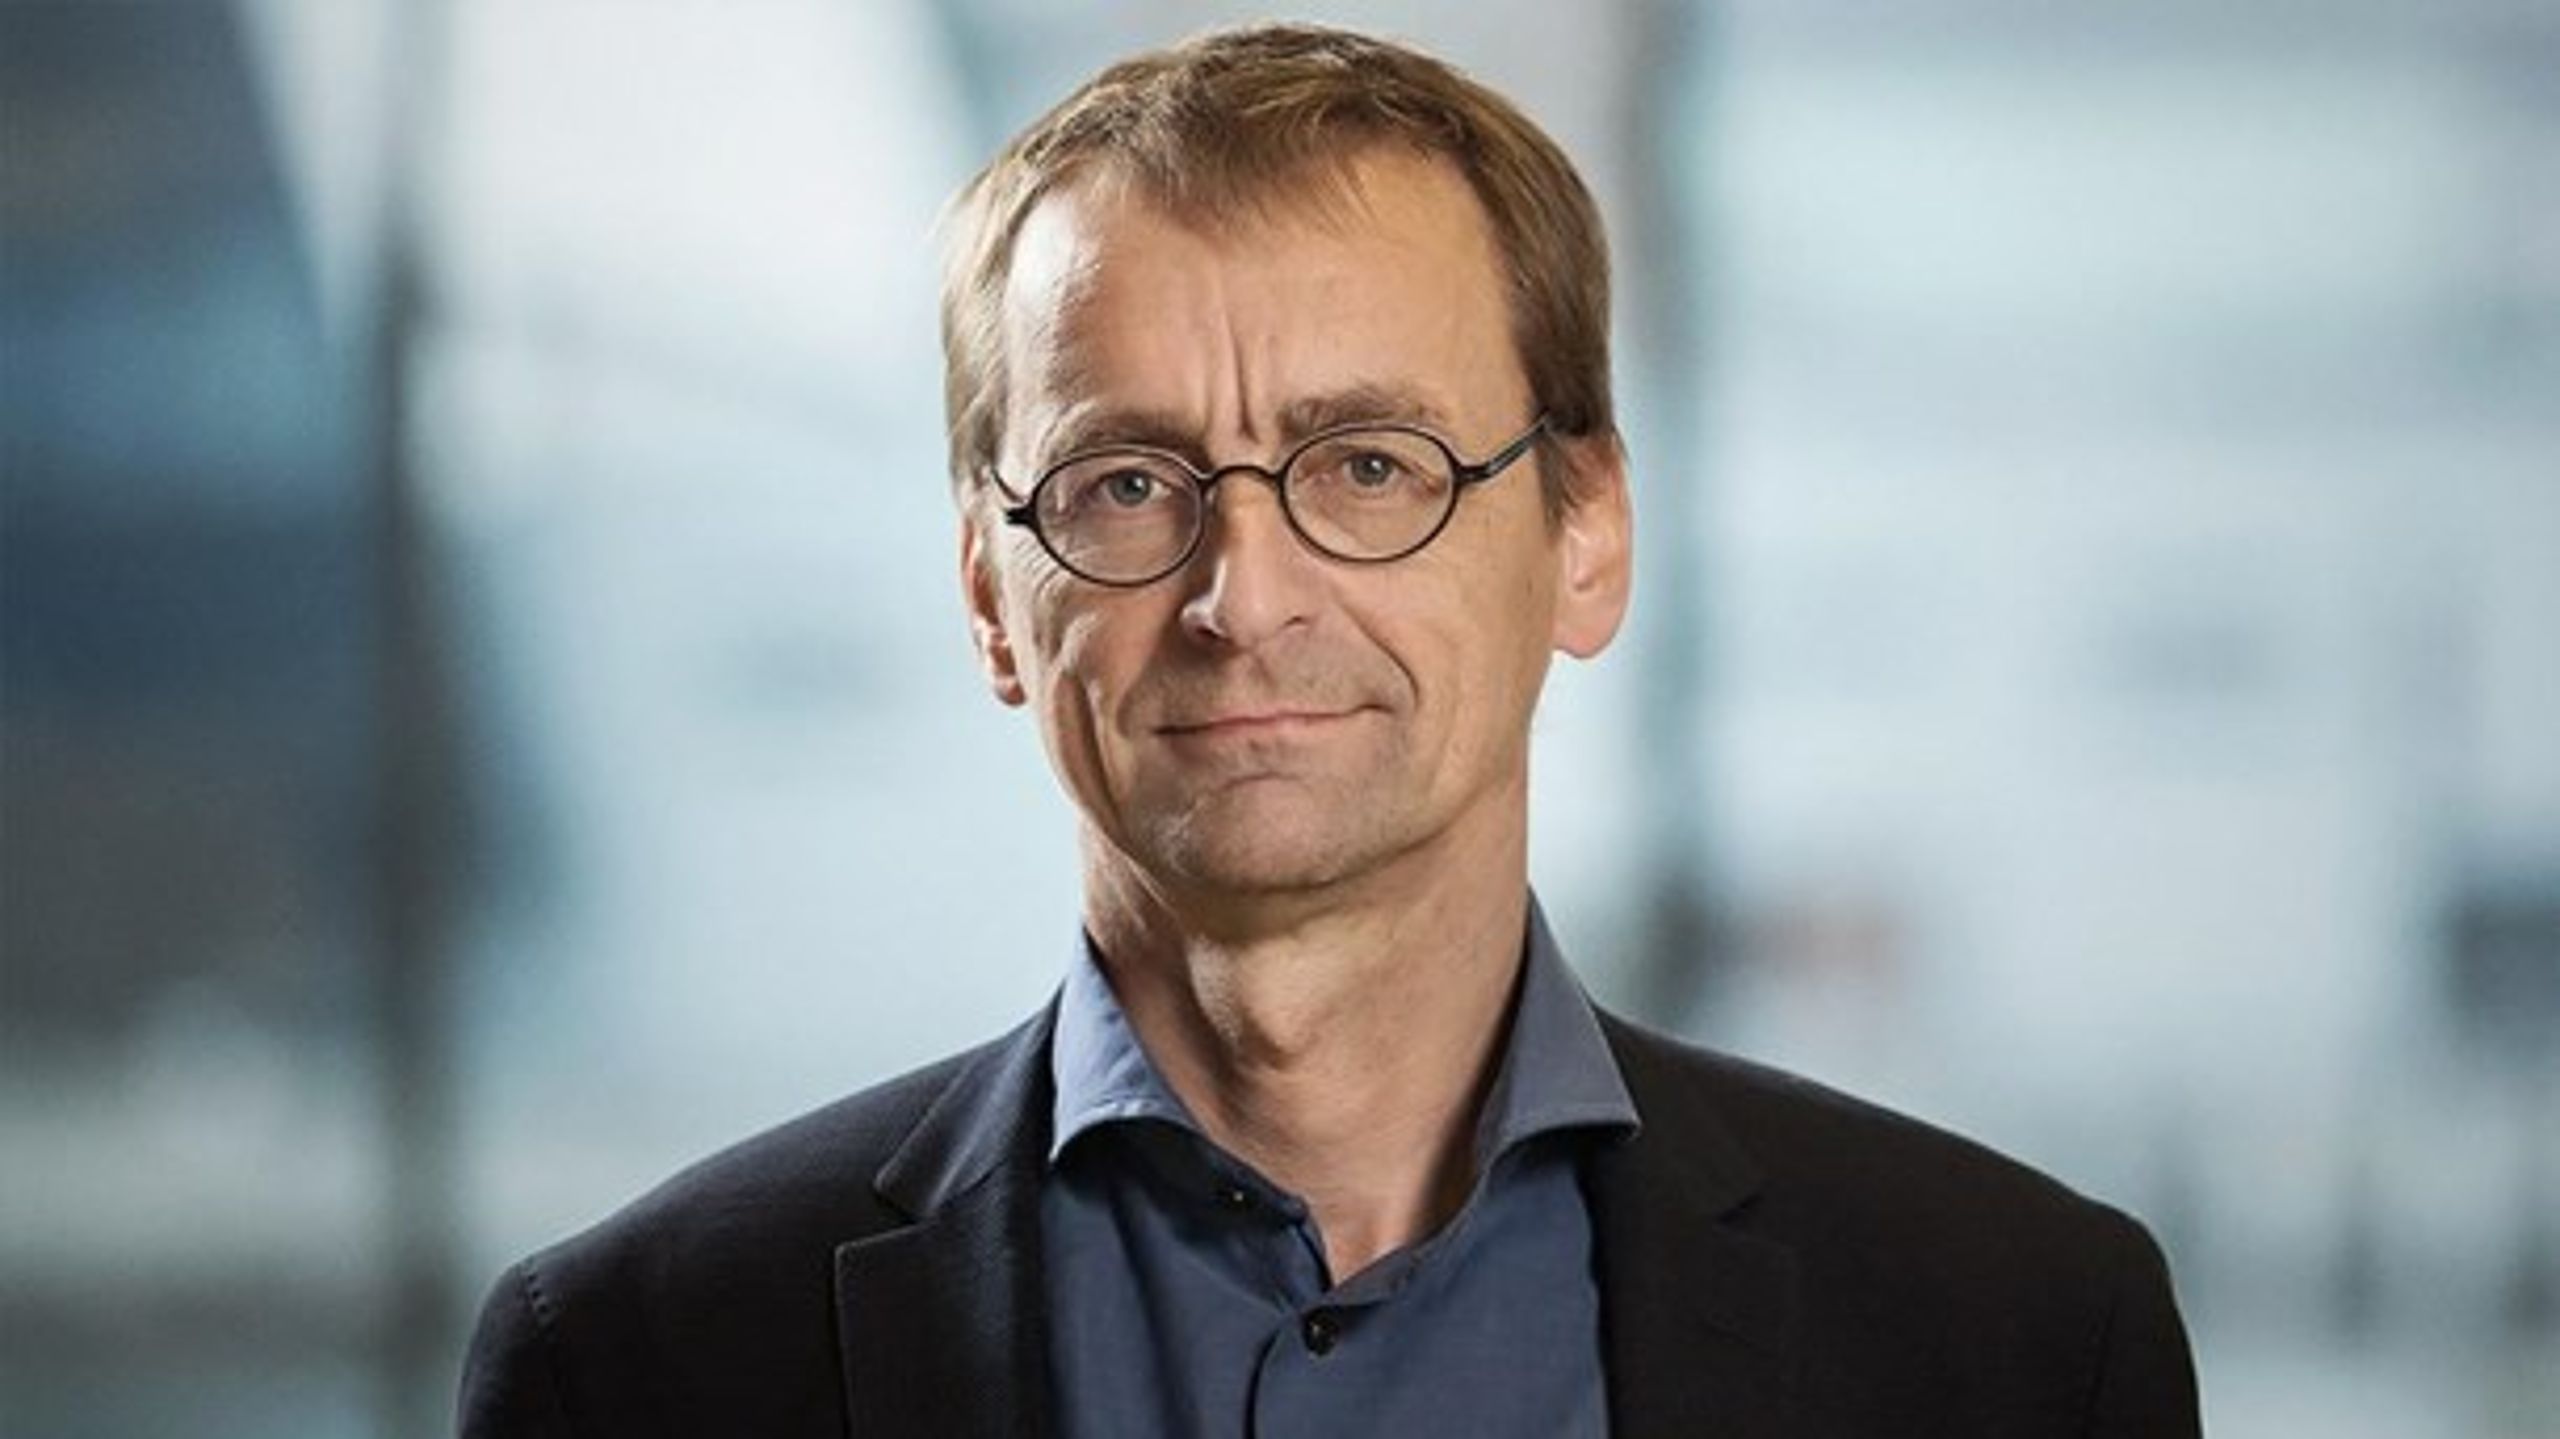 Professor i økonomi ved Aarhus Universitet Torben M. Andersen har set nærmere på pensionsforslagene i regeringens 2025-plan.